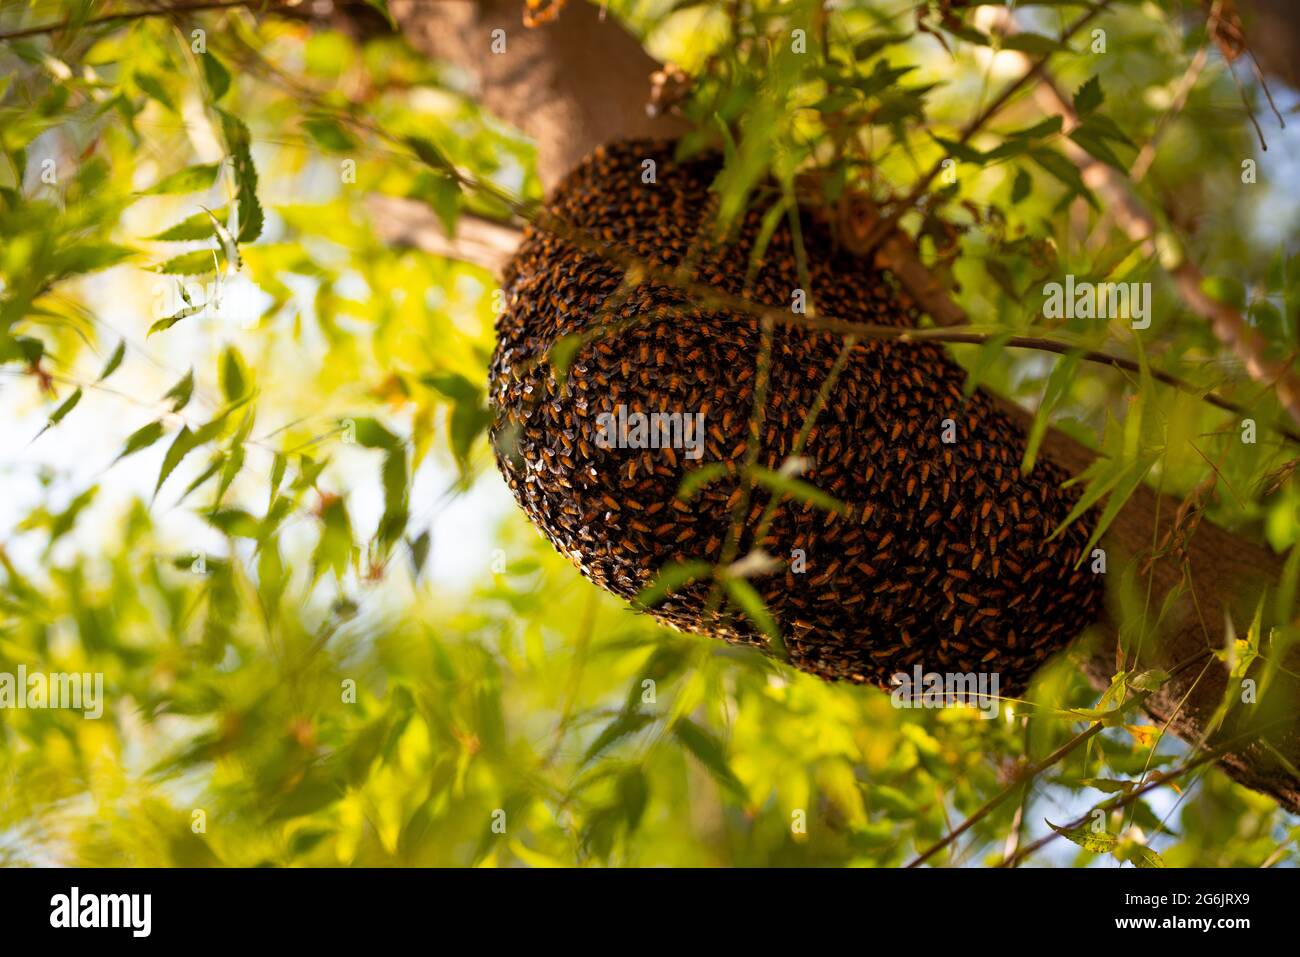 Enjambre de abeja que cuelga del árbol, Enjambre de abejas construyendo una nueva colmena que rodea el árbol. Foto de stock